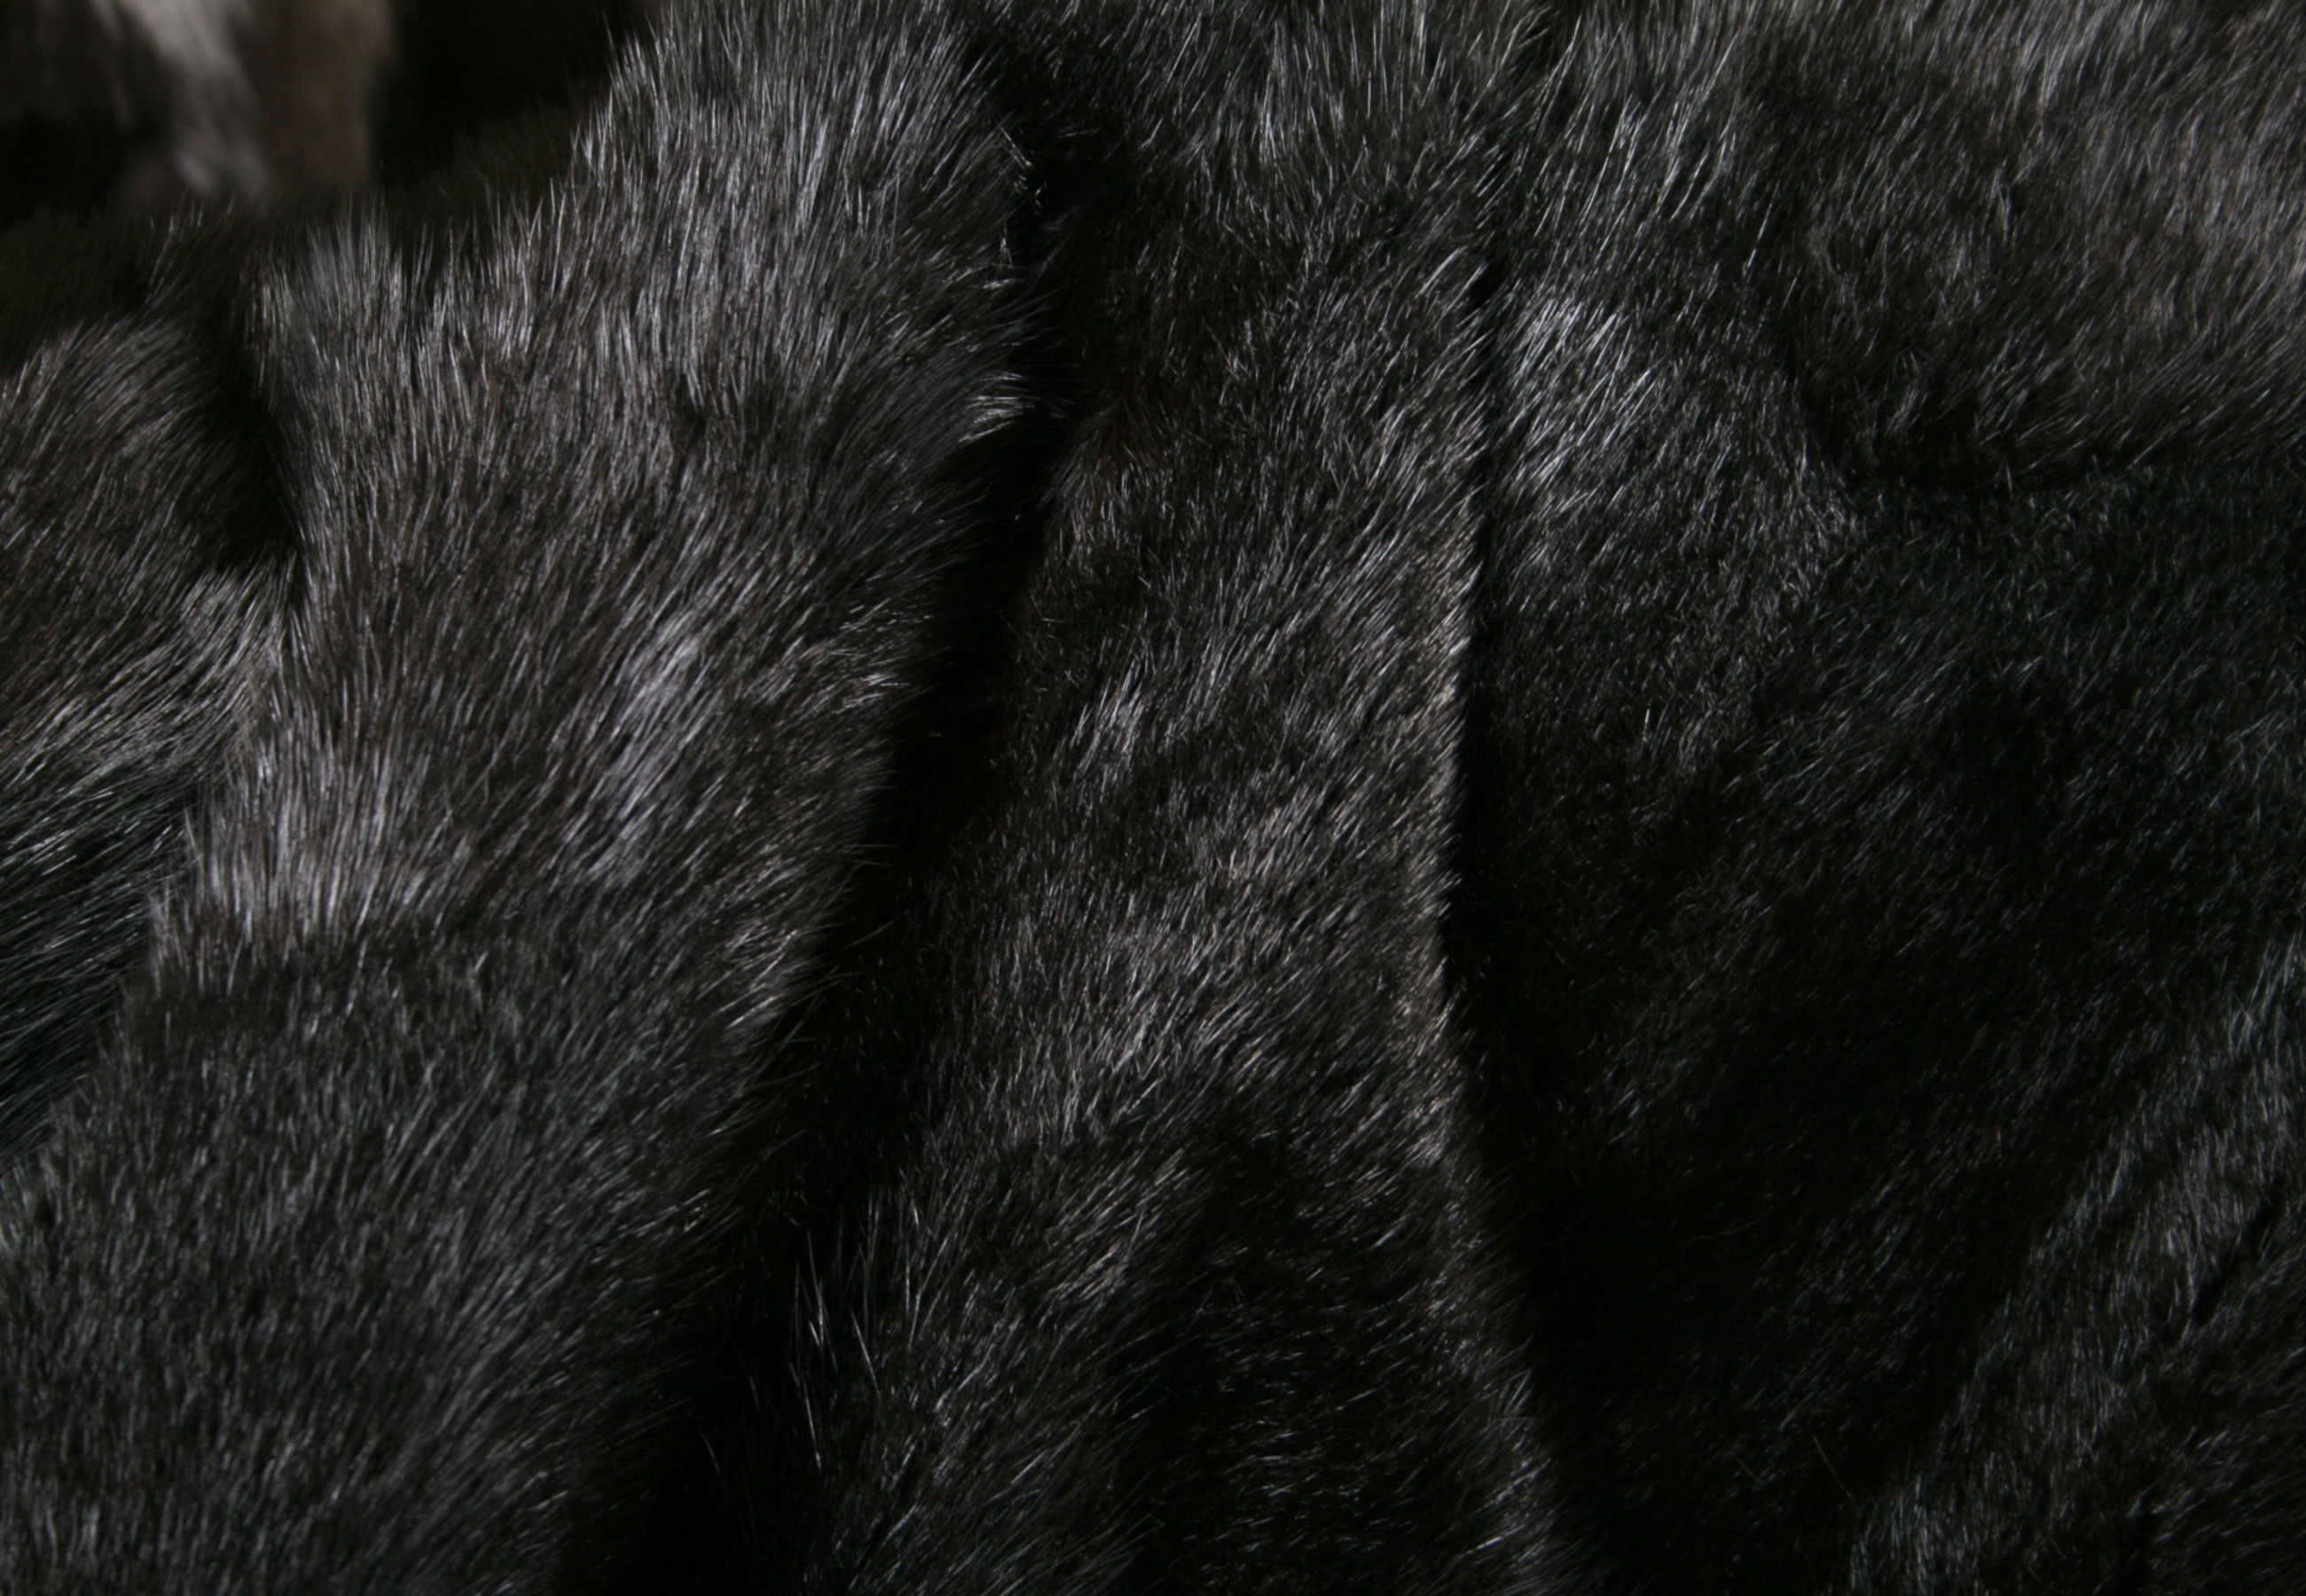 Musquash fur blanket from canadian musquash skins (Fur Harvesters)